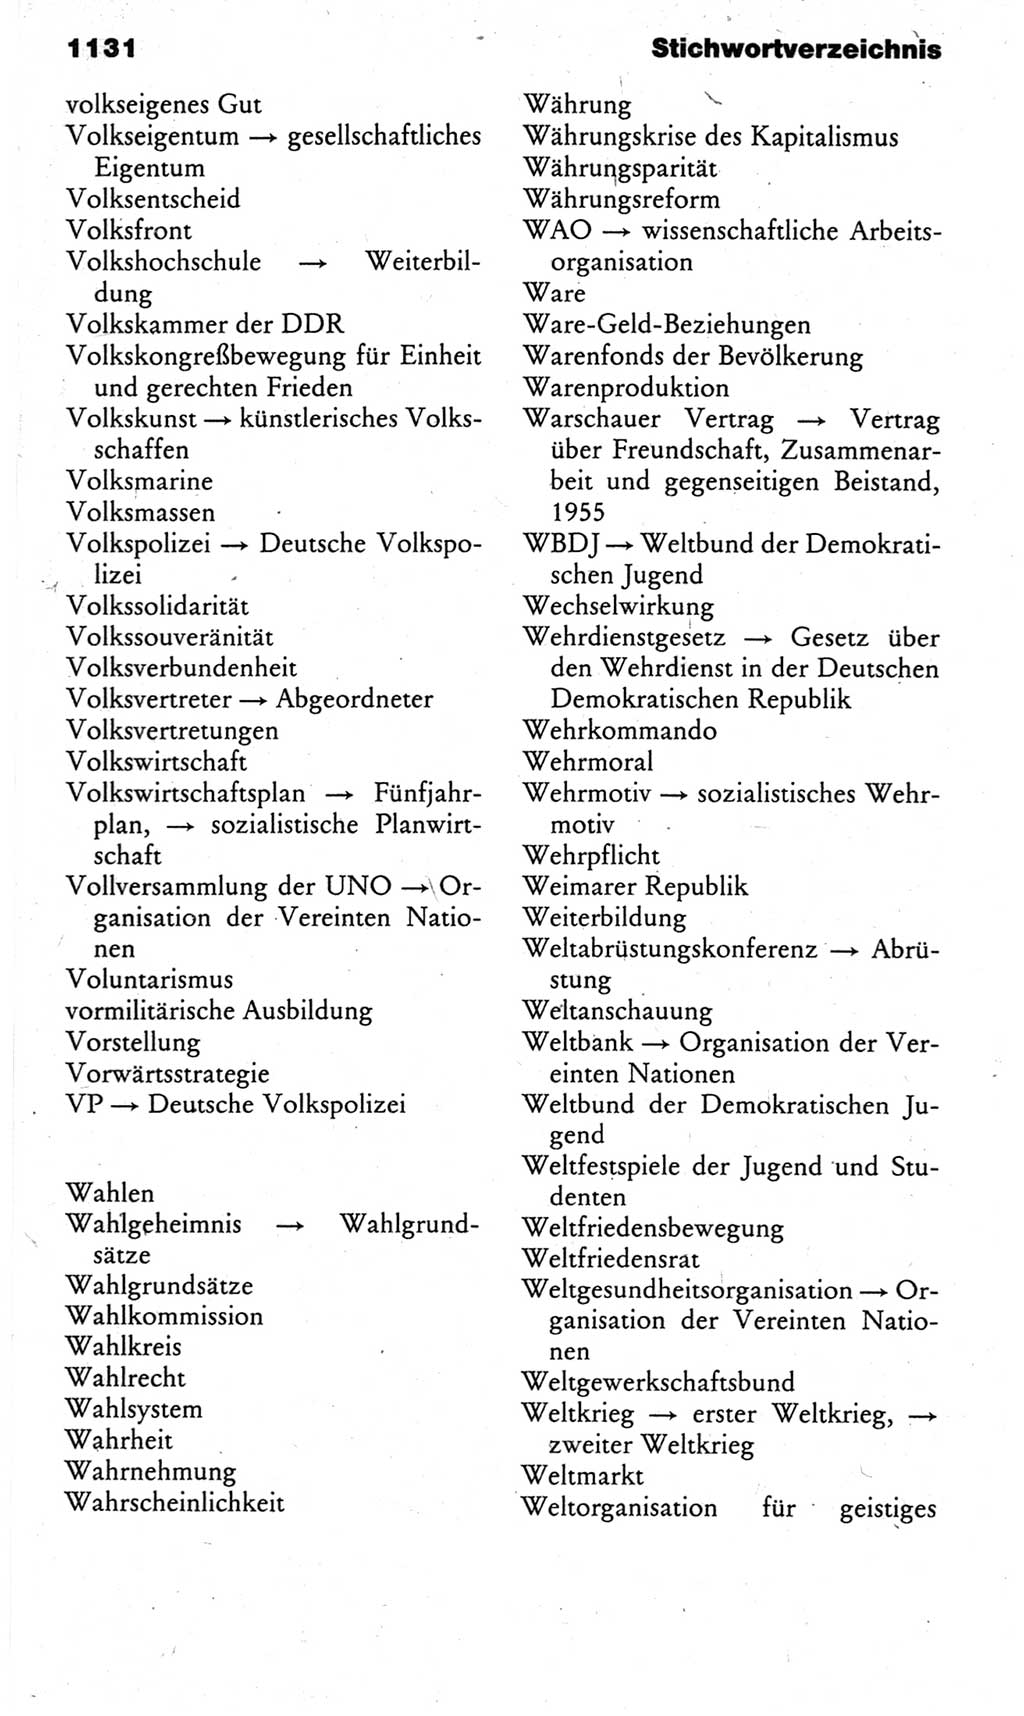 Kleines politisches Wörterbuch [Deutsche Demokratische Republik (DDR)] 1983, Seite 1131 (Kl. pol. Wb. DDR 1983, S. 1131)